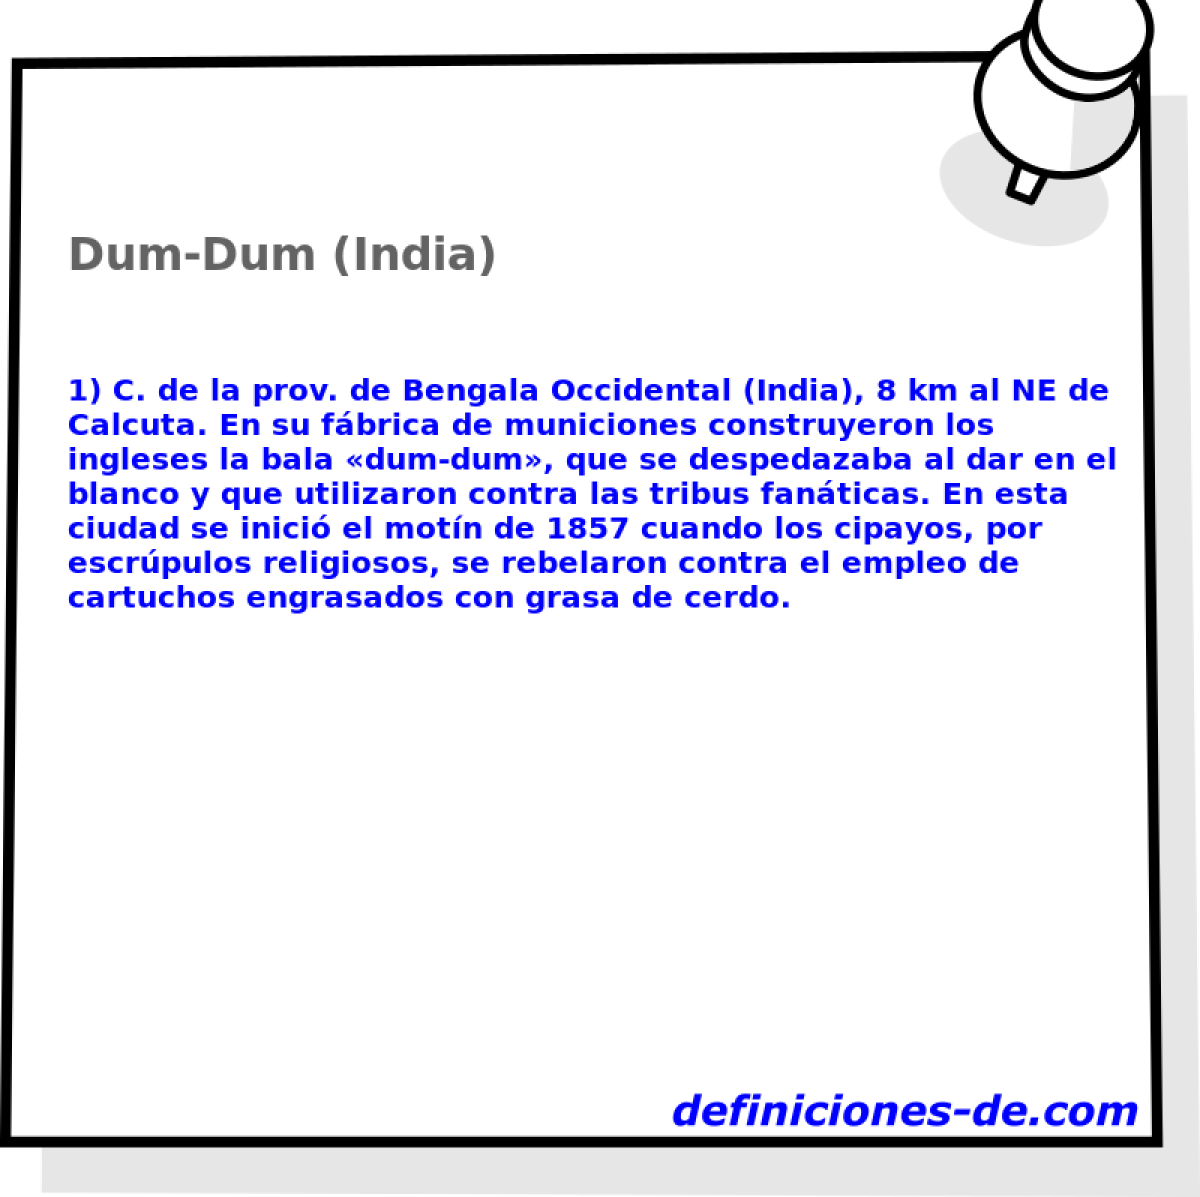 Dum-Dum (India) 